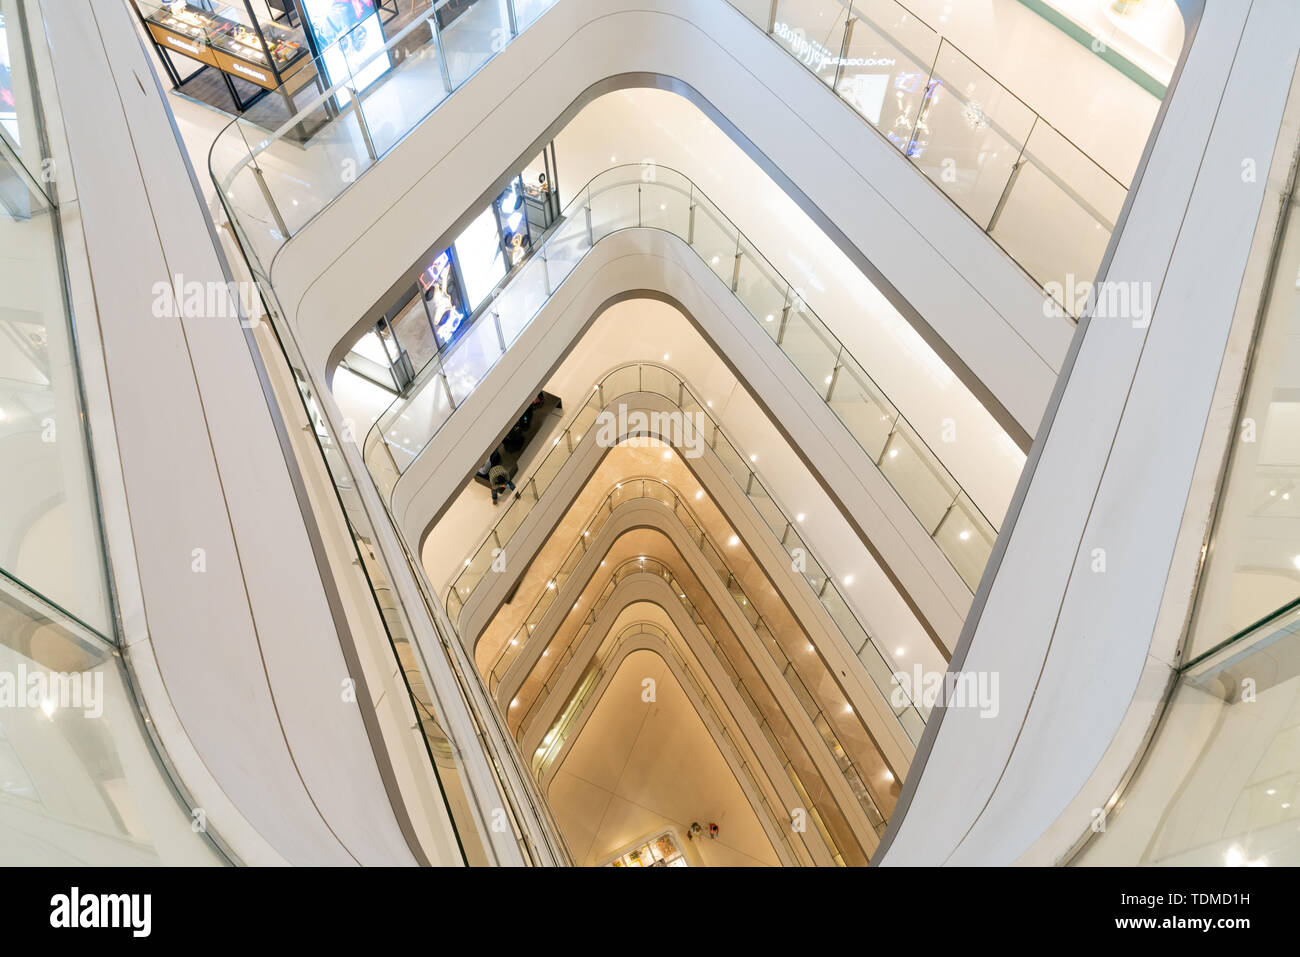 IFS mall elevator Stock Photo - Alamy